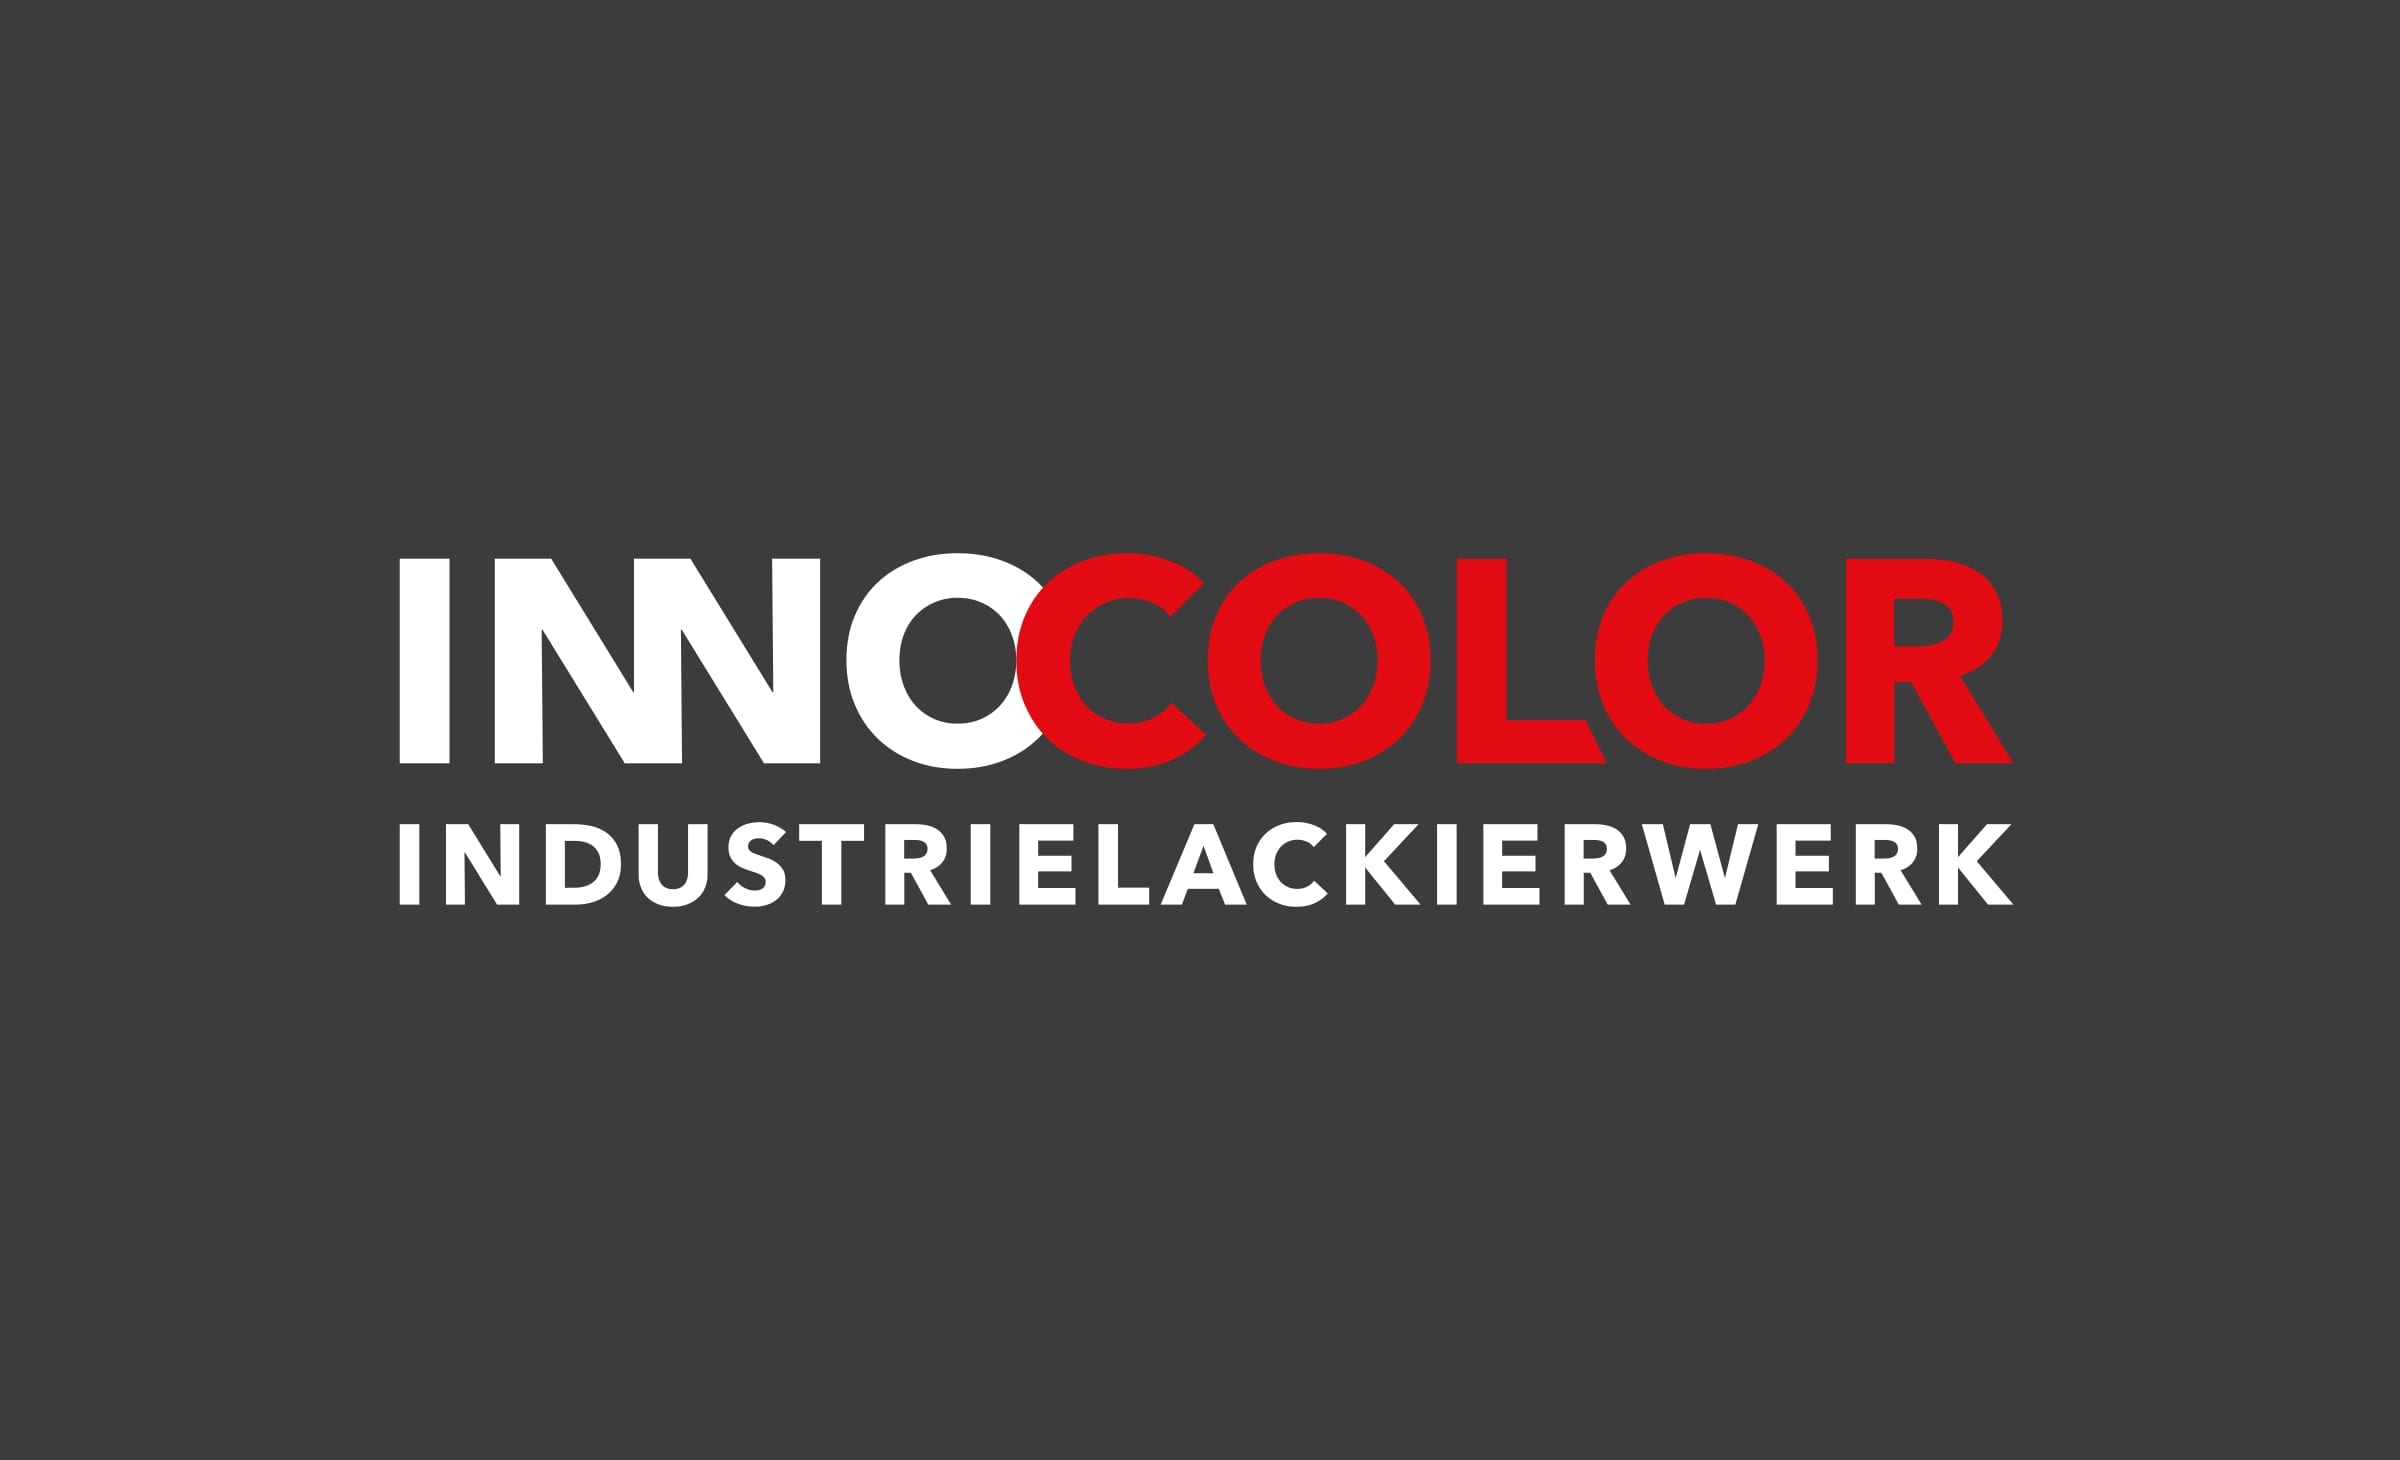 180grad_Innocolor_Logo